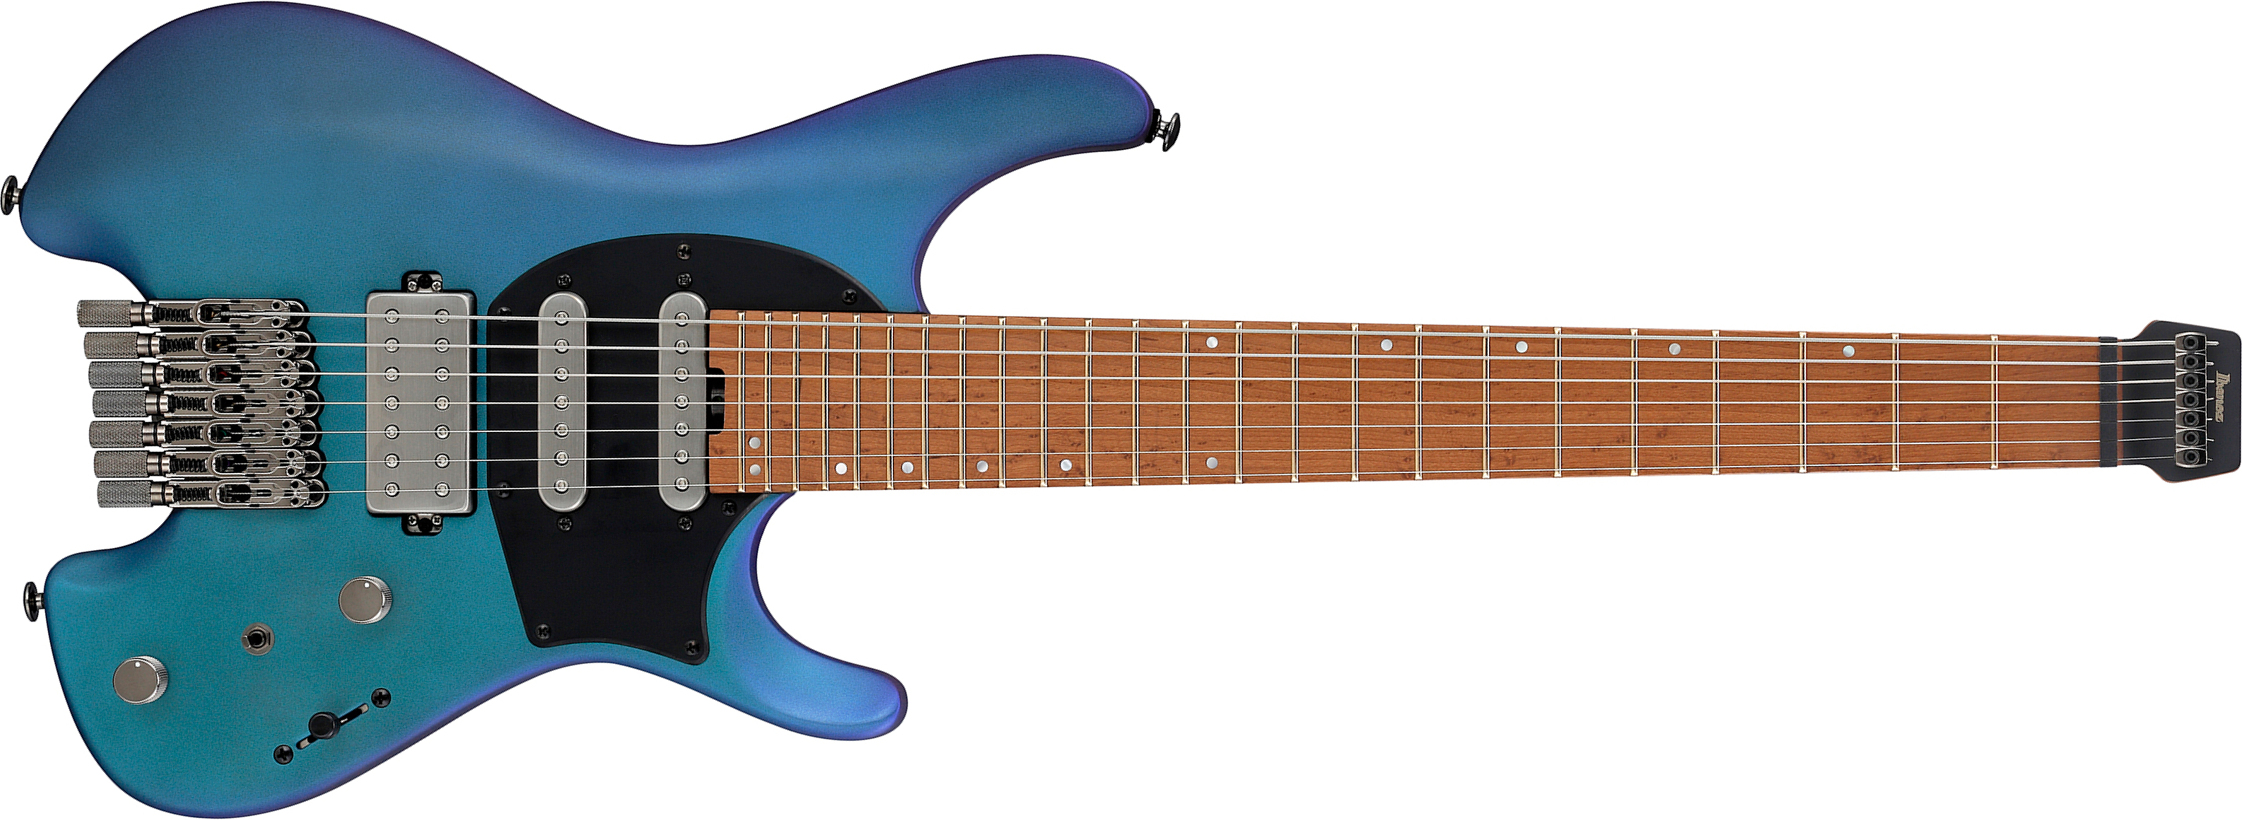 Ibanez Q547 Bmm Quest 7c Hss Ht Mn - Blue Chameleon Metallic Matte - Guitarra eléctrica de 7 cuerdas - Main picture